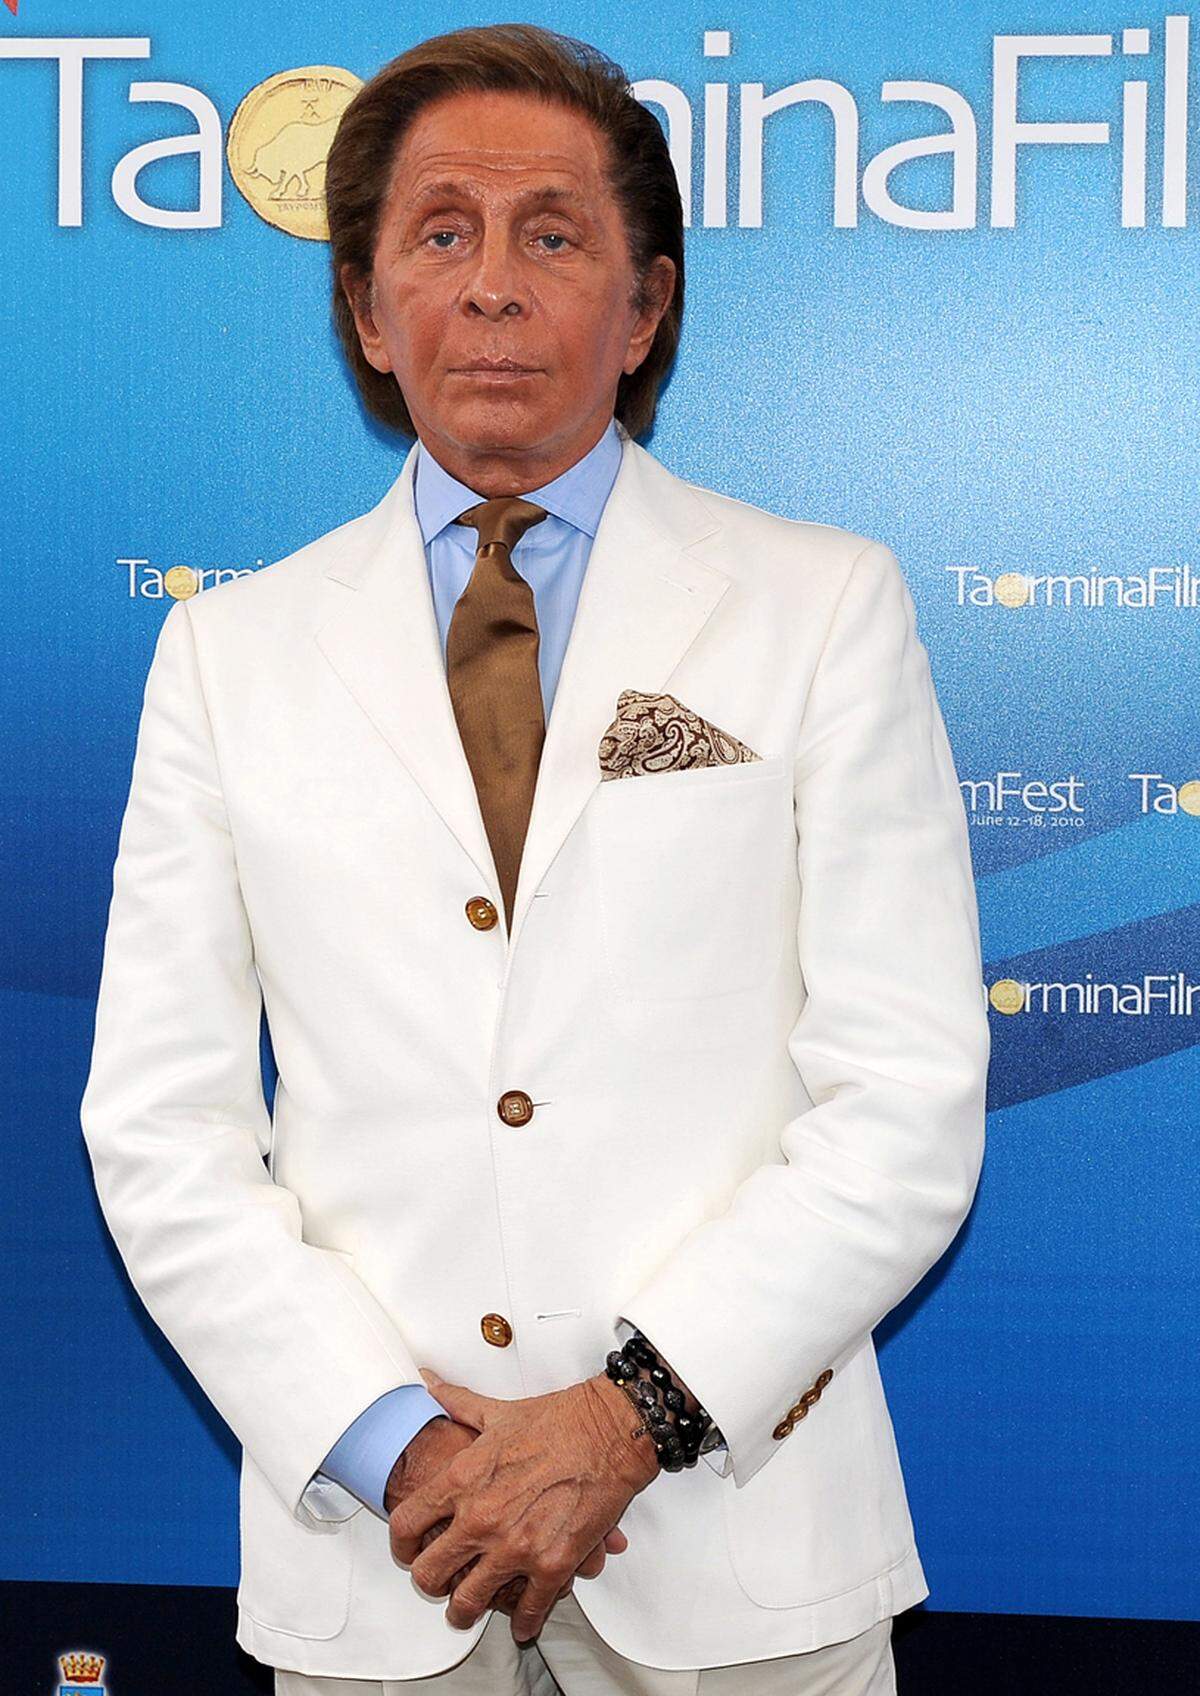 Designer Valentino Garavani mag es anscheinend sehr, wenn sich sein Hautfarbe schön vom weißen Anzug abhebt.